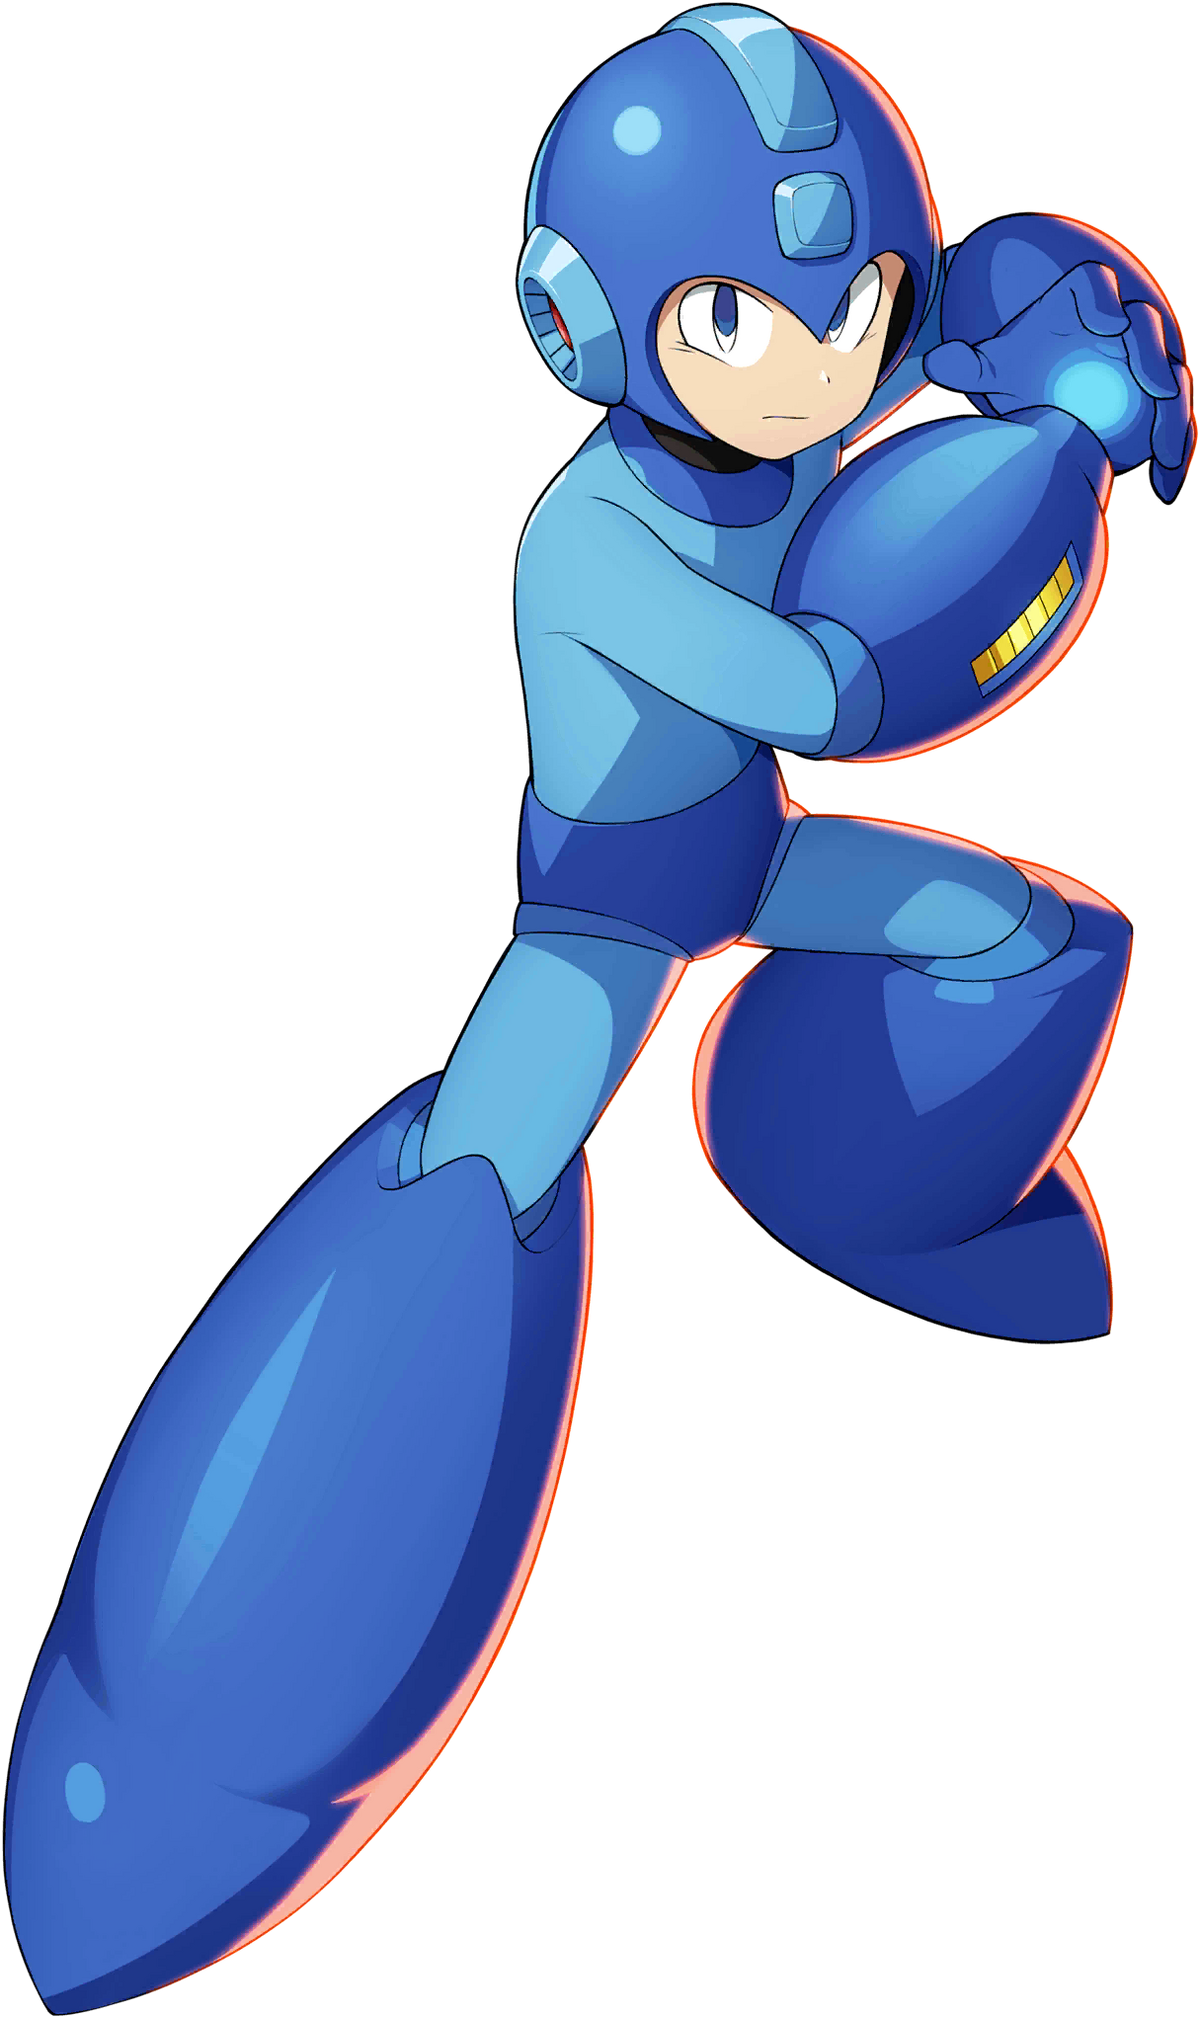 Mega Man Main Characters - BEST GAMES WALKTHROUGH